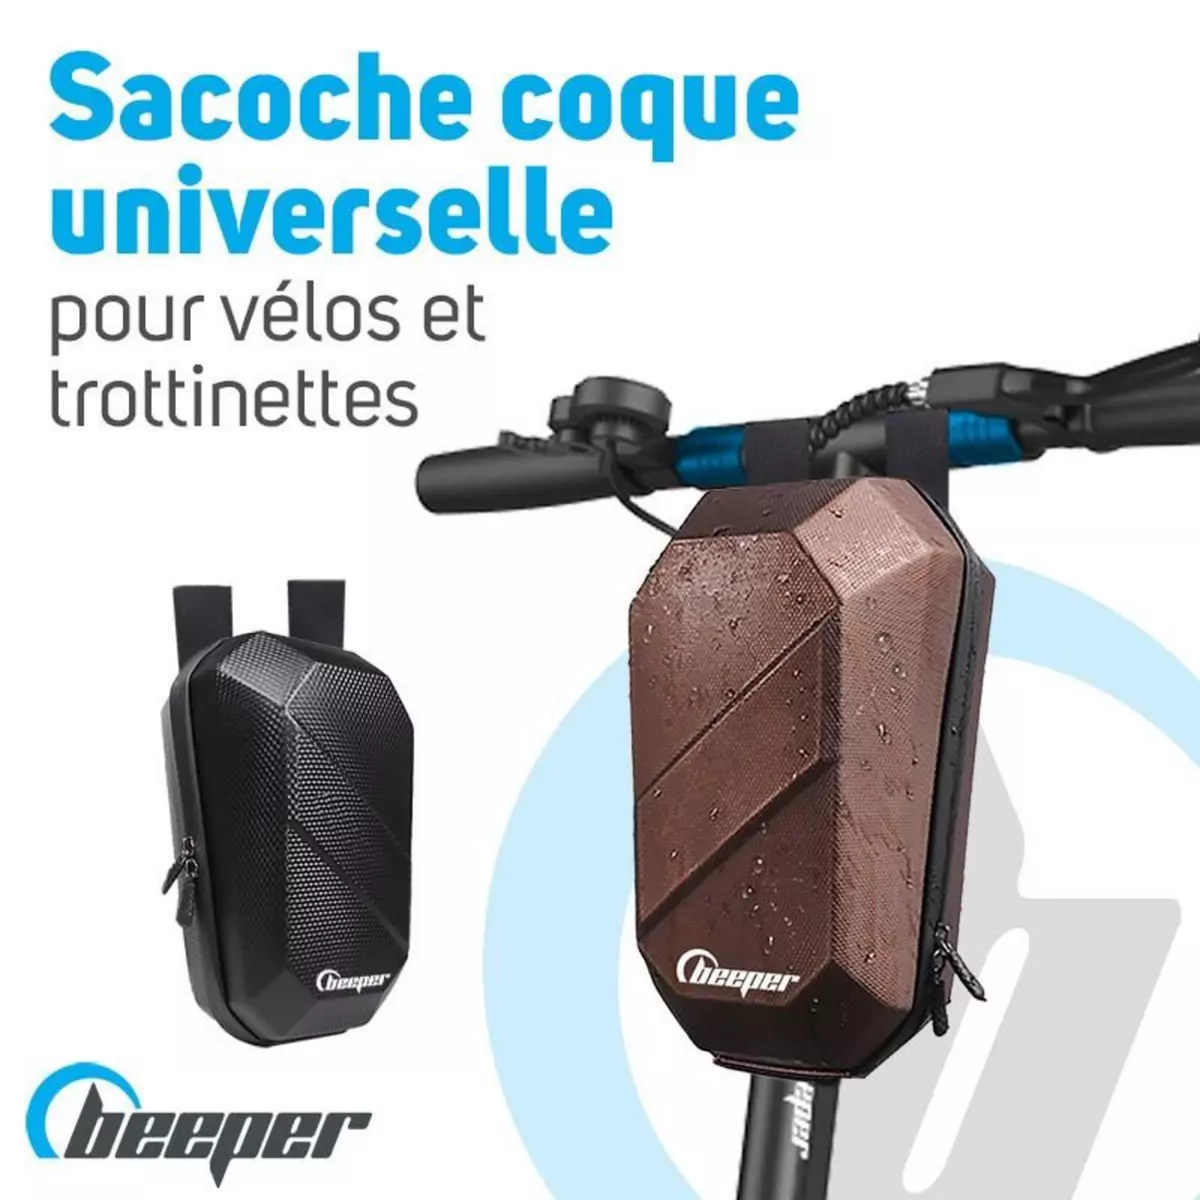  Sacoche coque universelle Pour trottinettes et vélos Couleur - Bronze, Taille - L